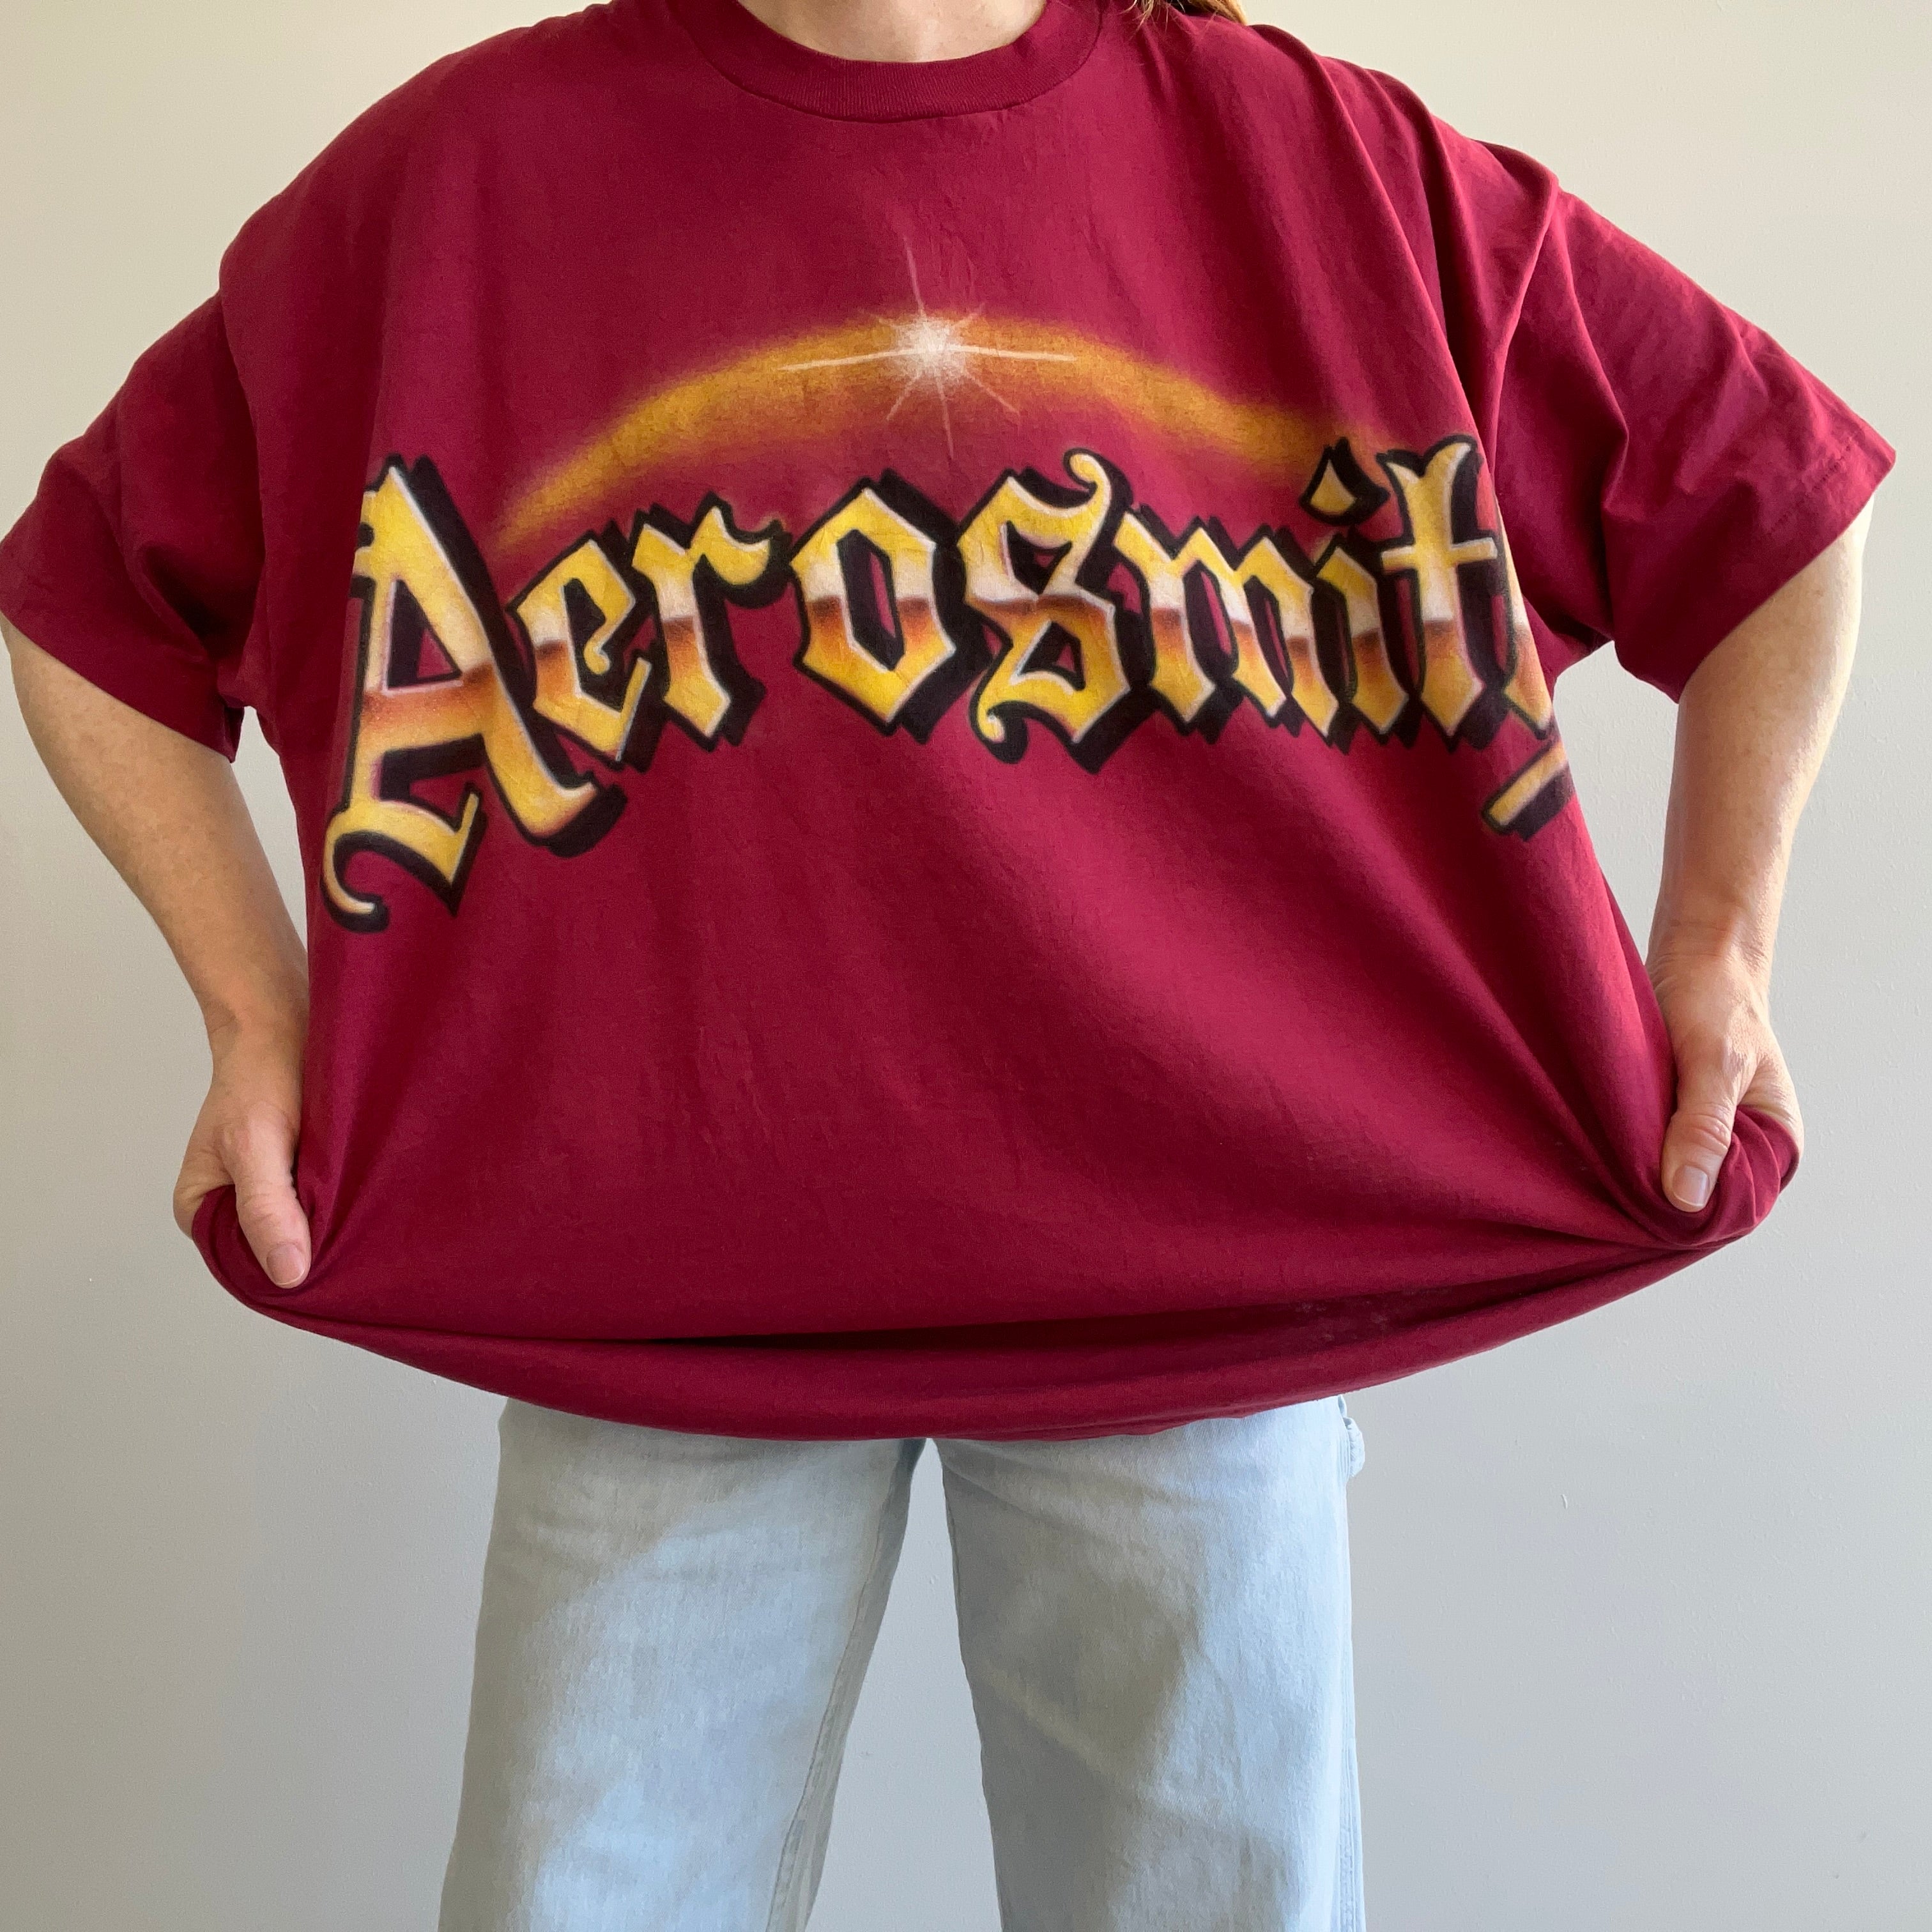 T-shirt Aerosmith surdimensionné pour aérographe bricolage des années 1990 - Point unique FOTL Best